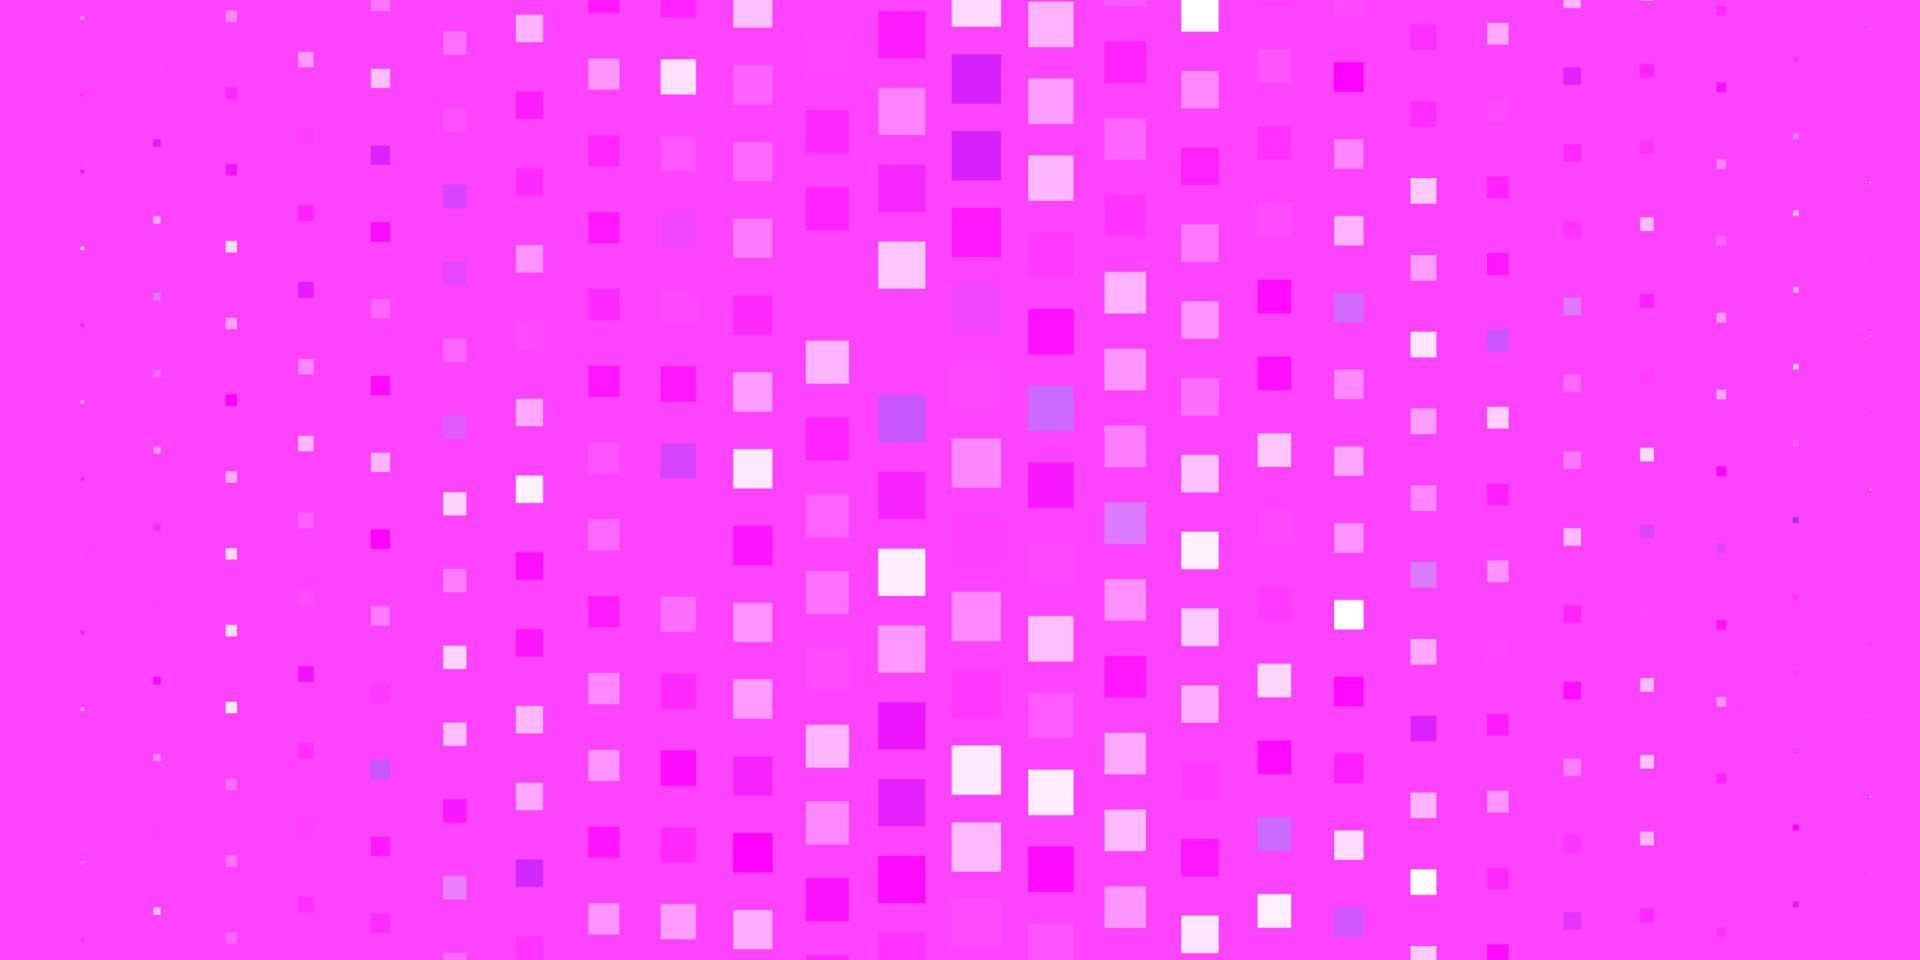 patrón de vector púrpura claro, rosa en estilo cuadrado.